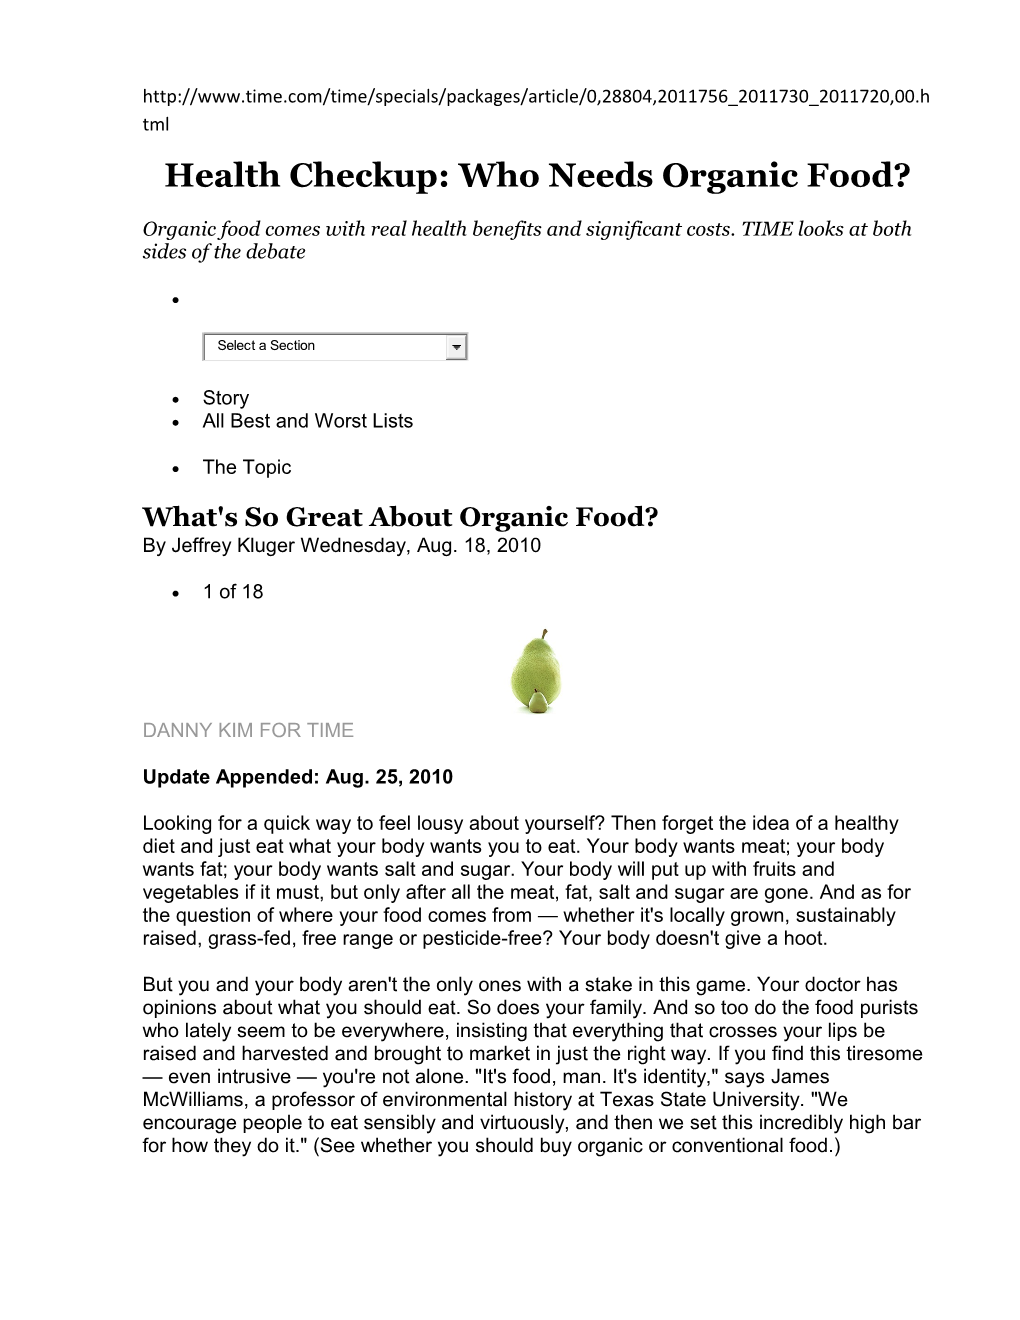 Health Checkup: Who Needs Organic Food?